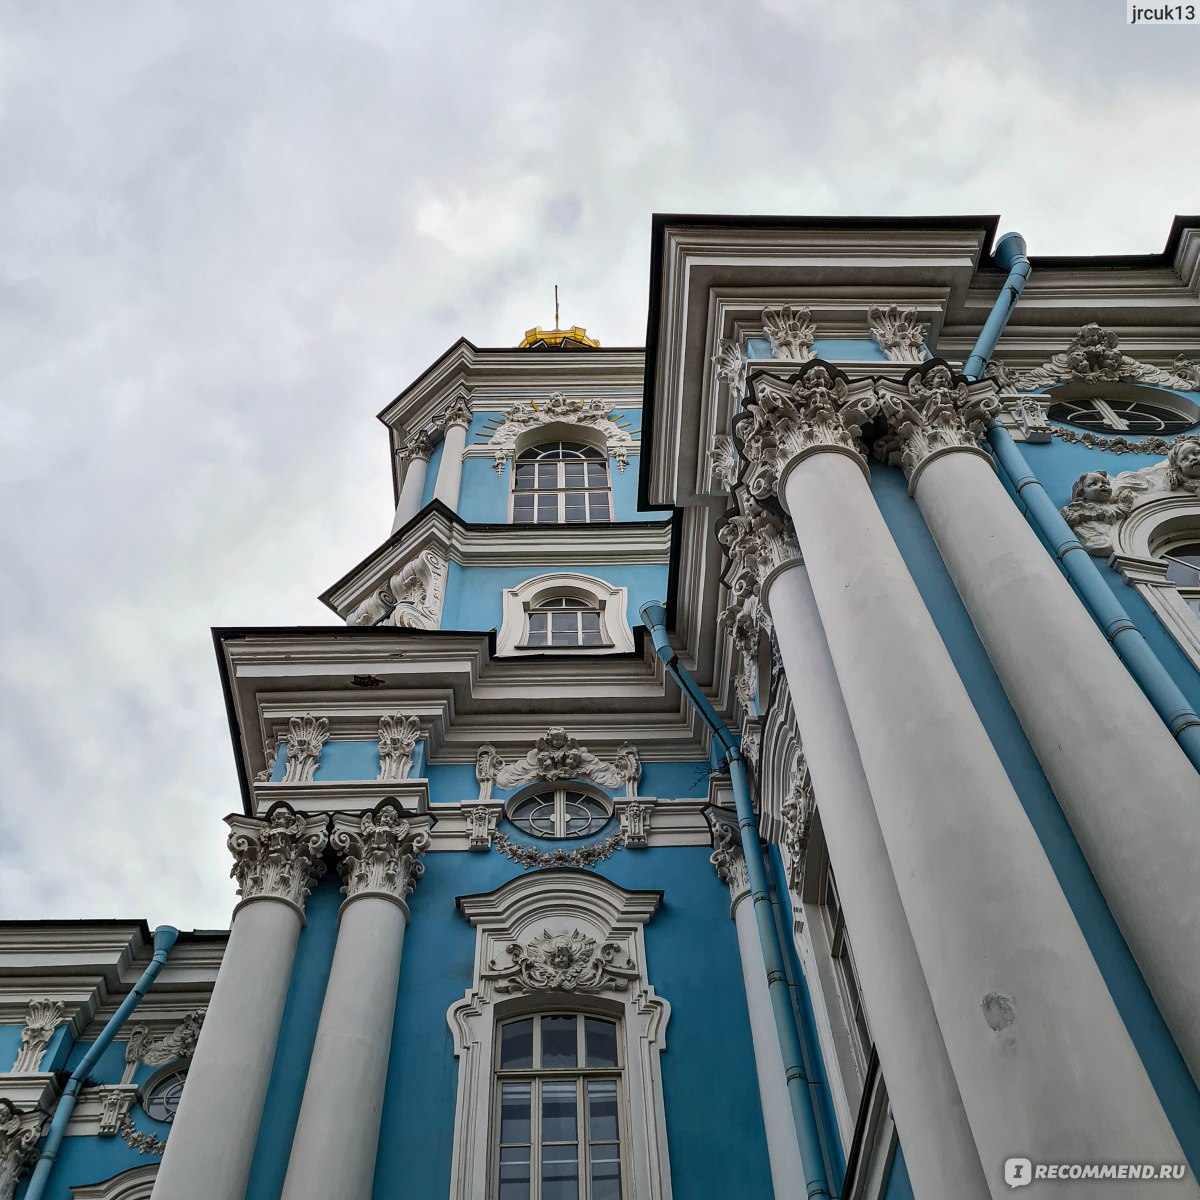 Николо-Богоявленский морской собор (Никольский морской собор), Санкт-Петербург фото